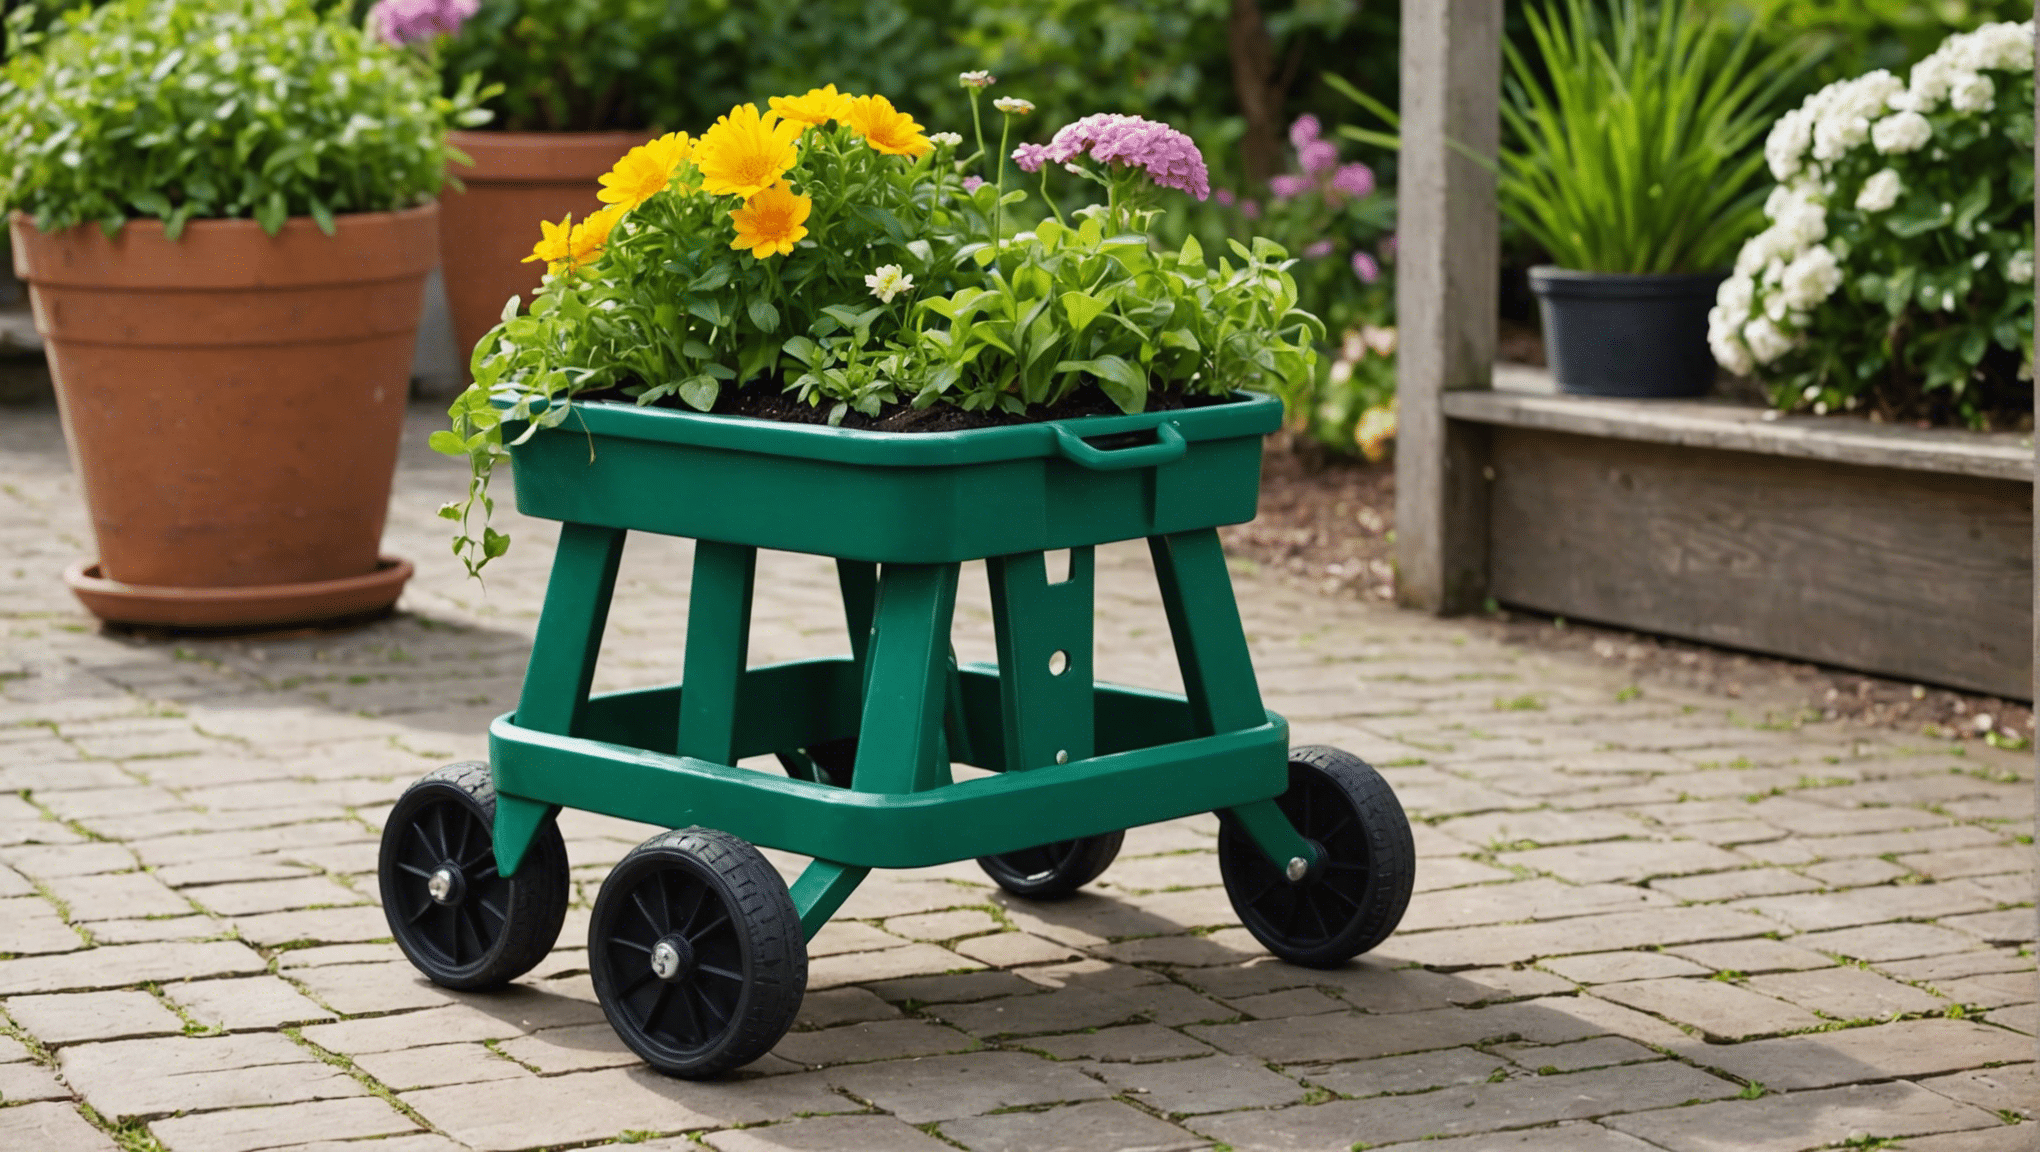 objevte výhody zahradních stoliček s kolečky a zjistěte, zda se pro vaše zahradnické potřeby vyplatí investice.